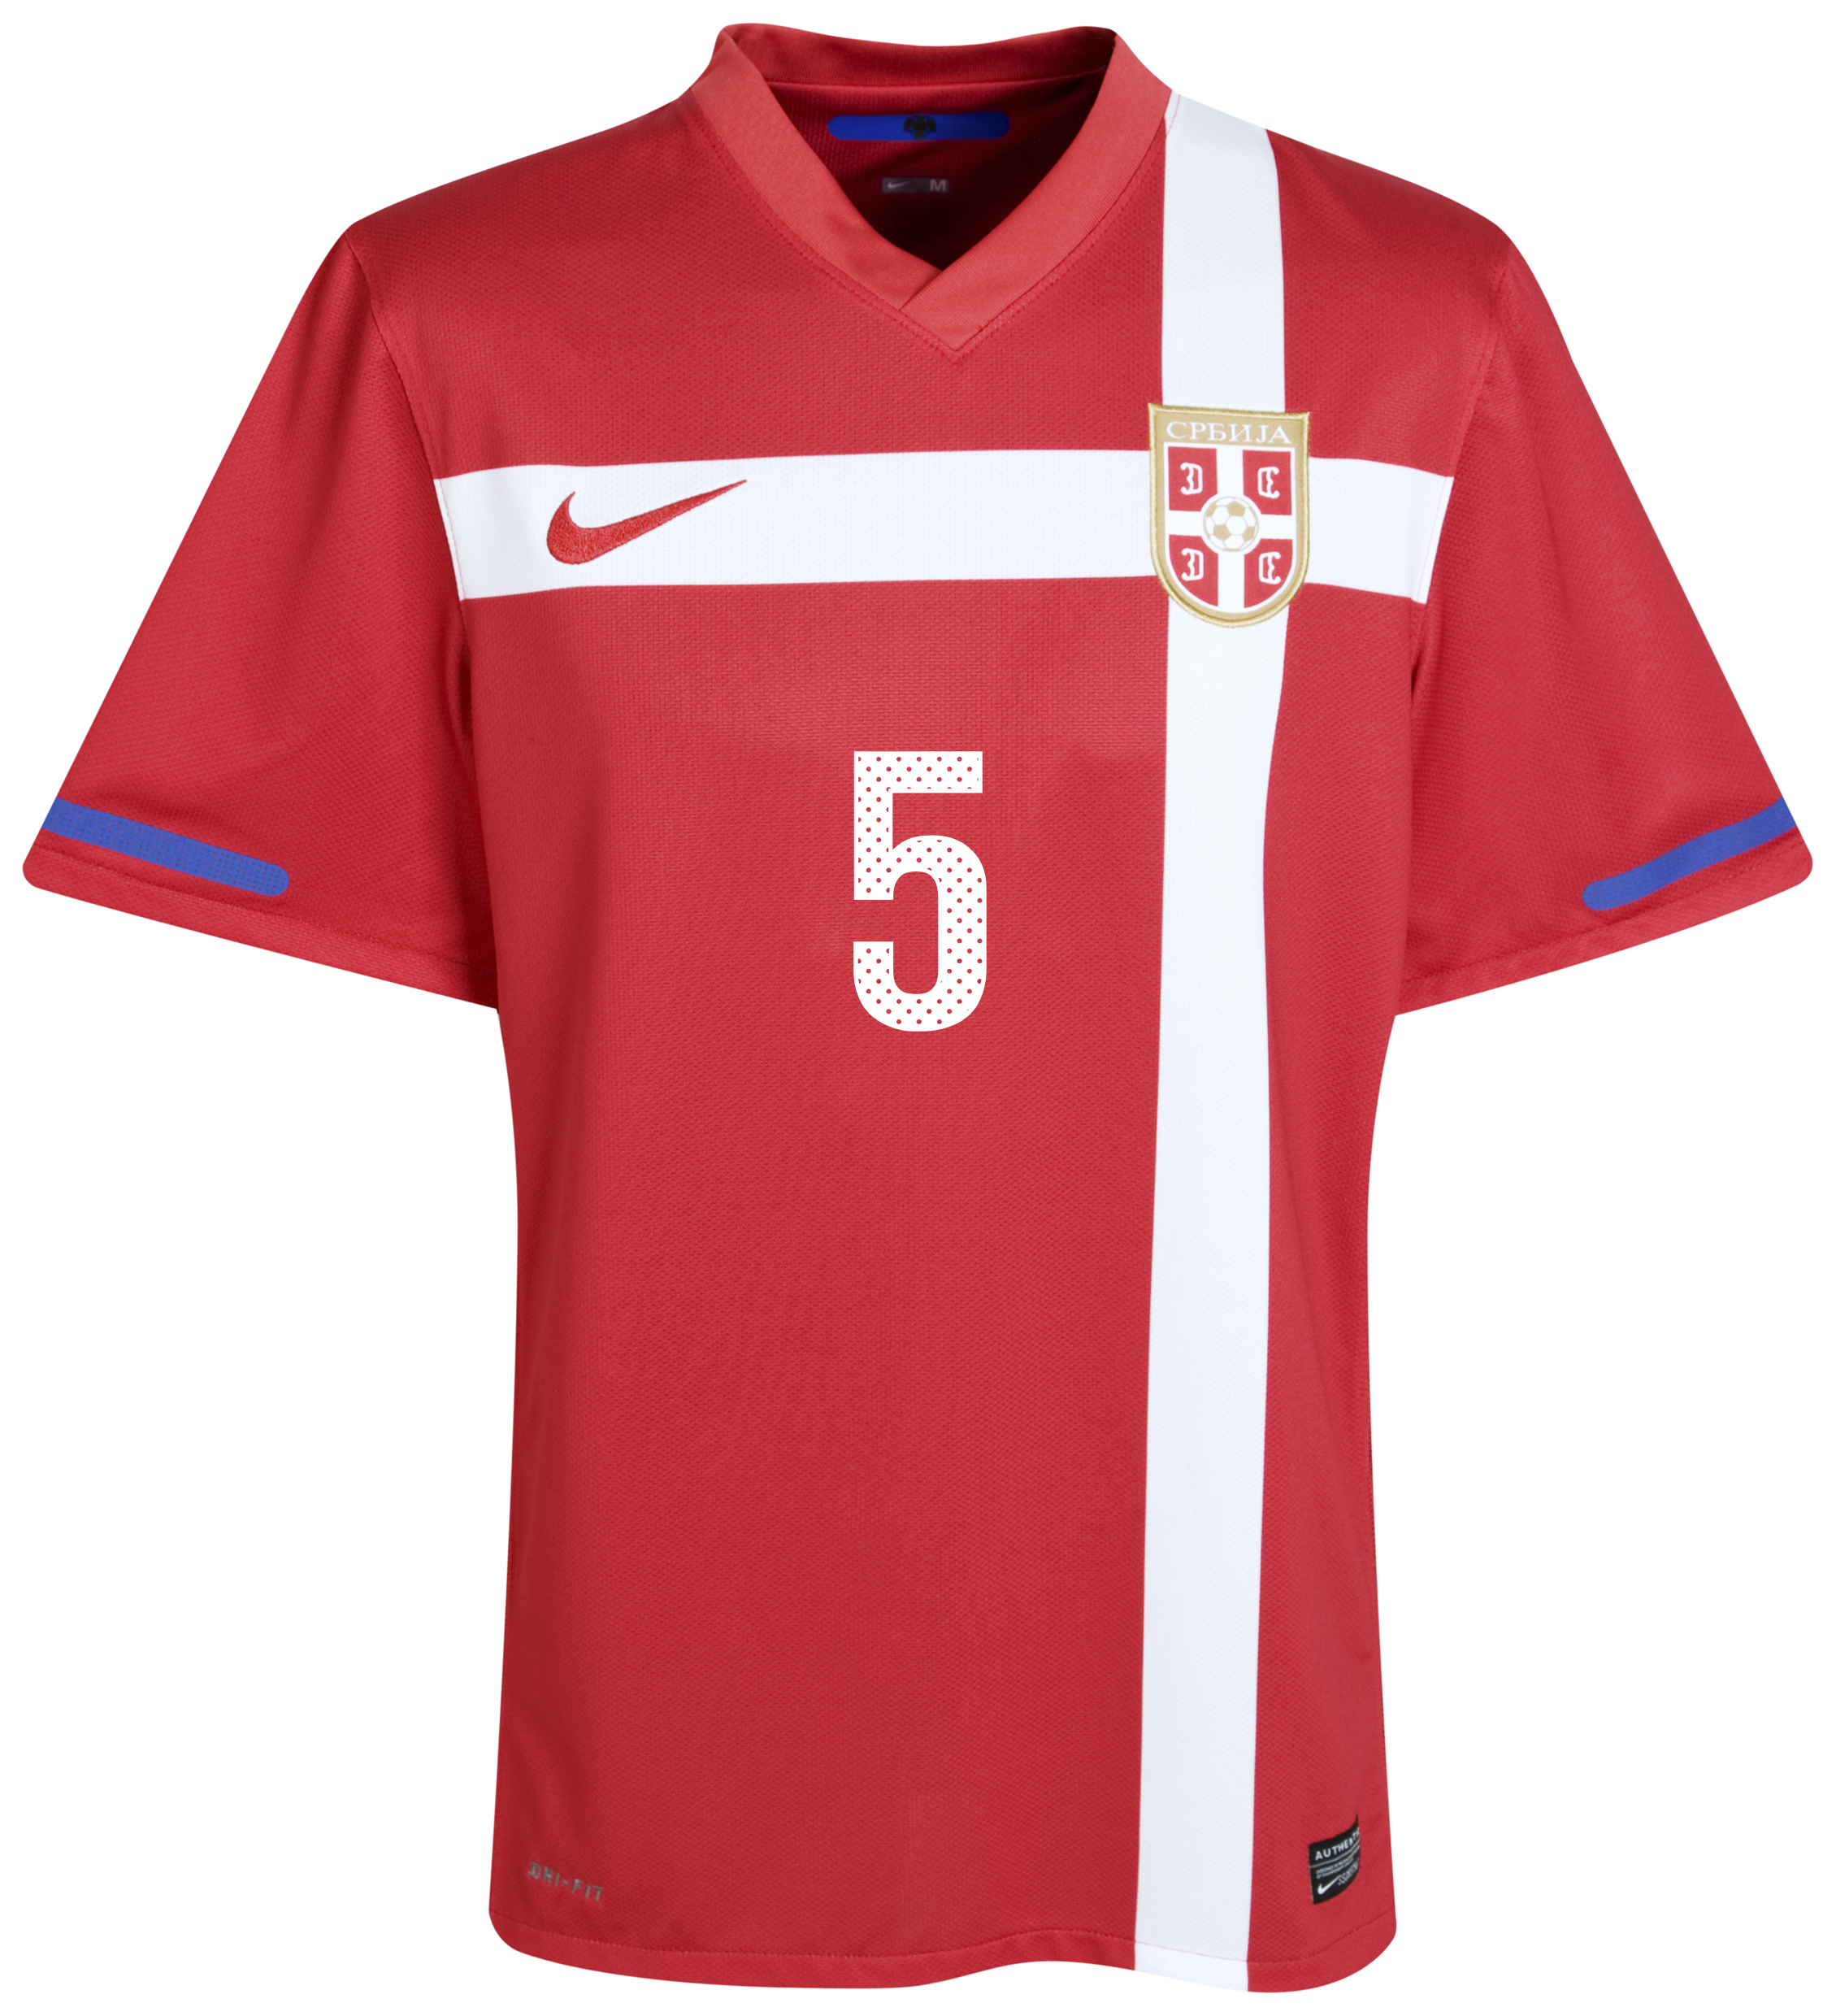 الملابس النهائيه لكأس العالم (2010) Kb-71658a